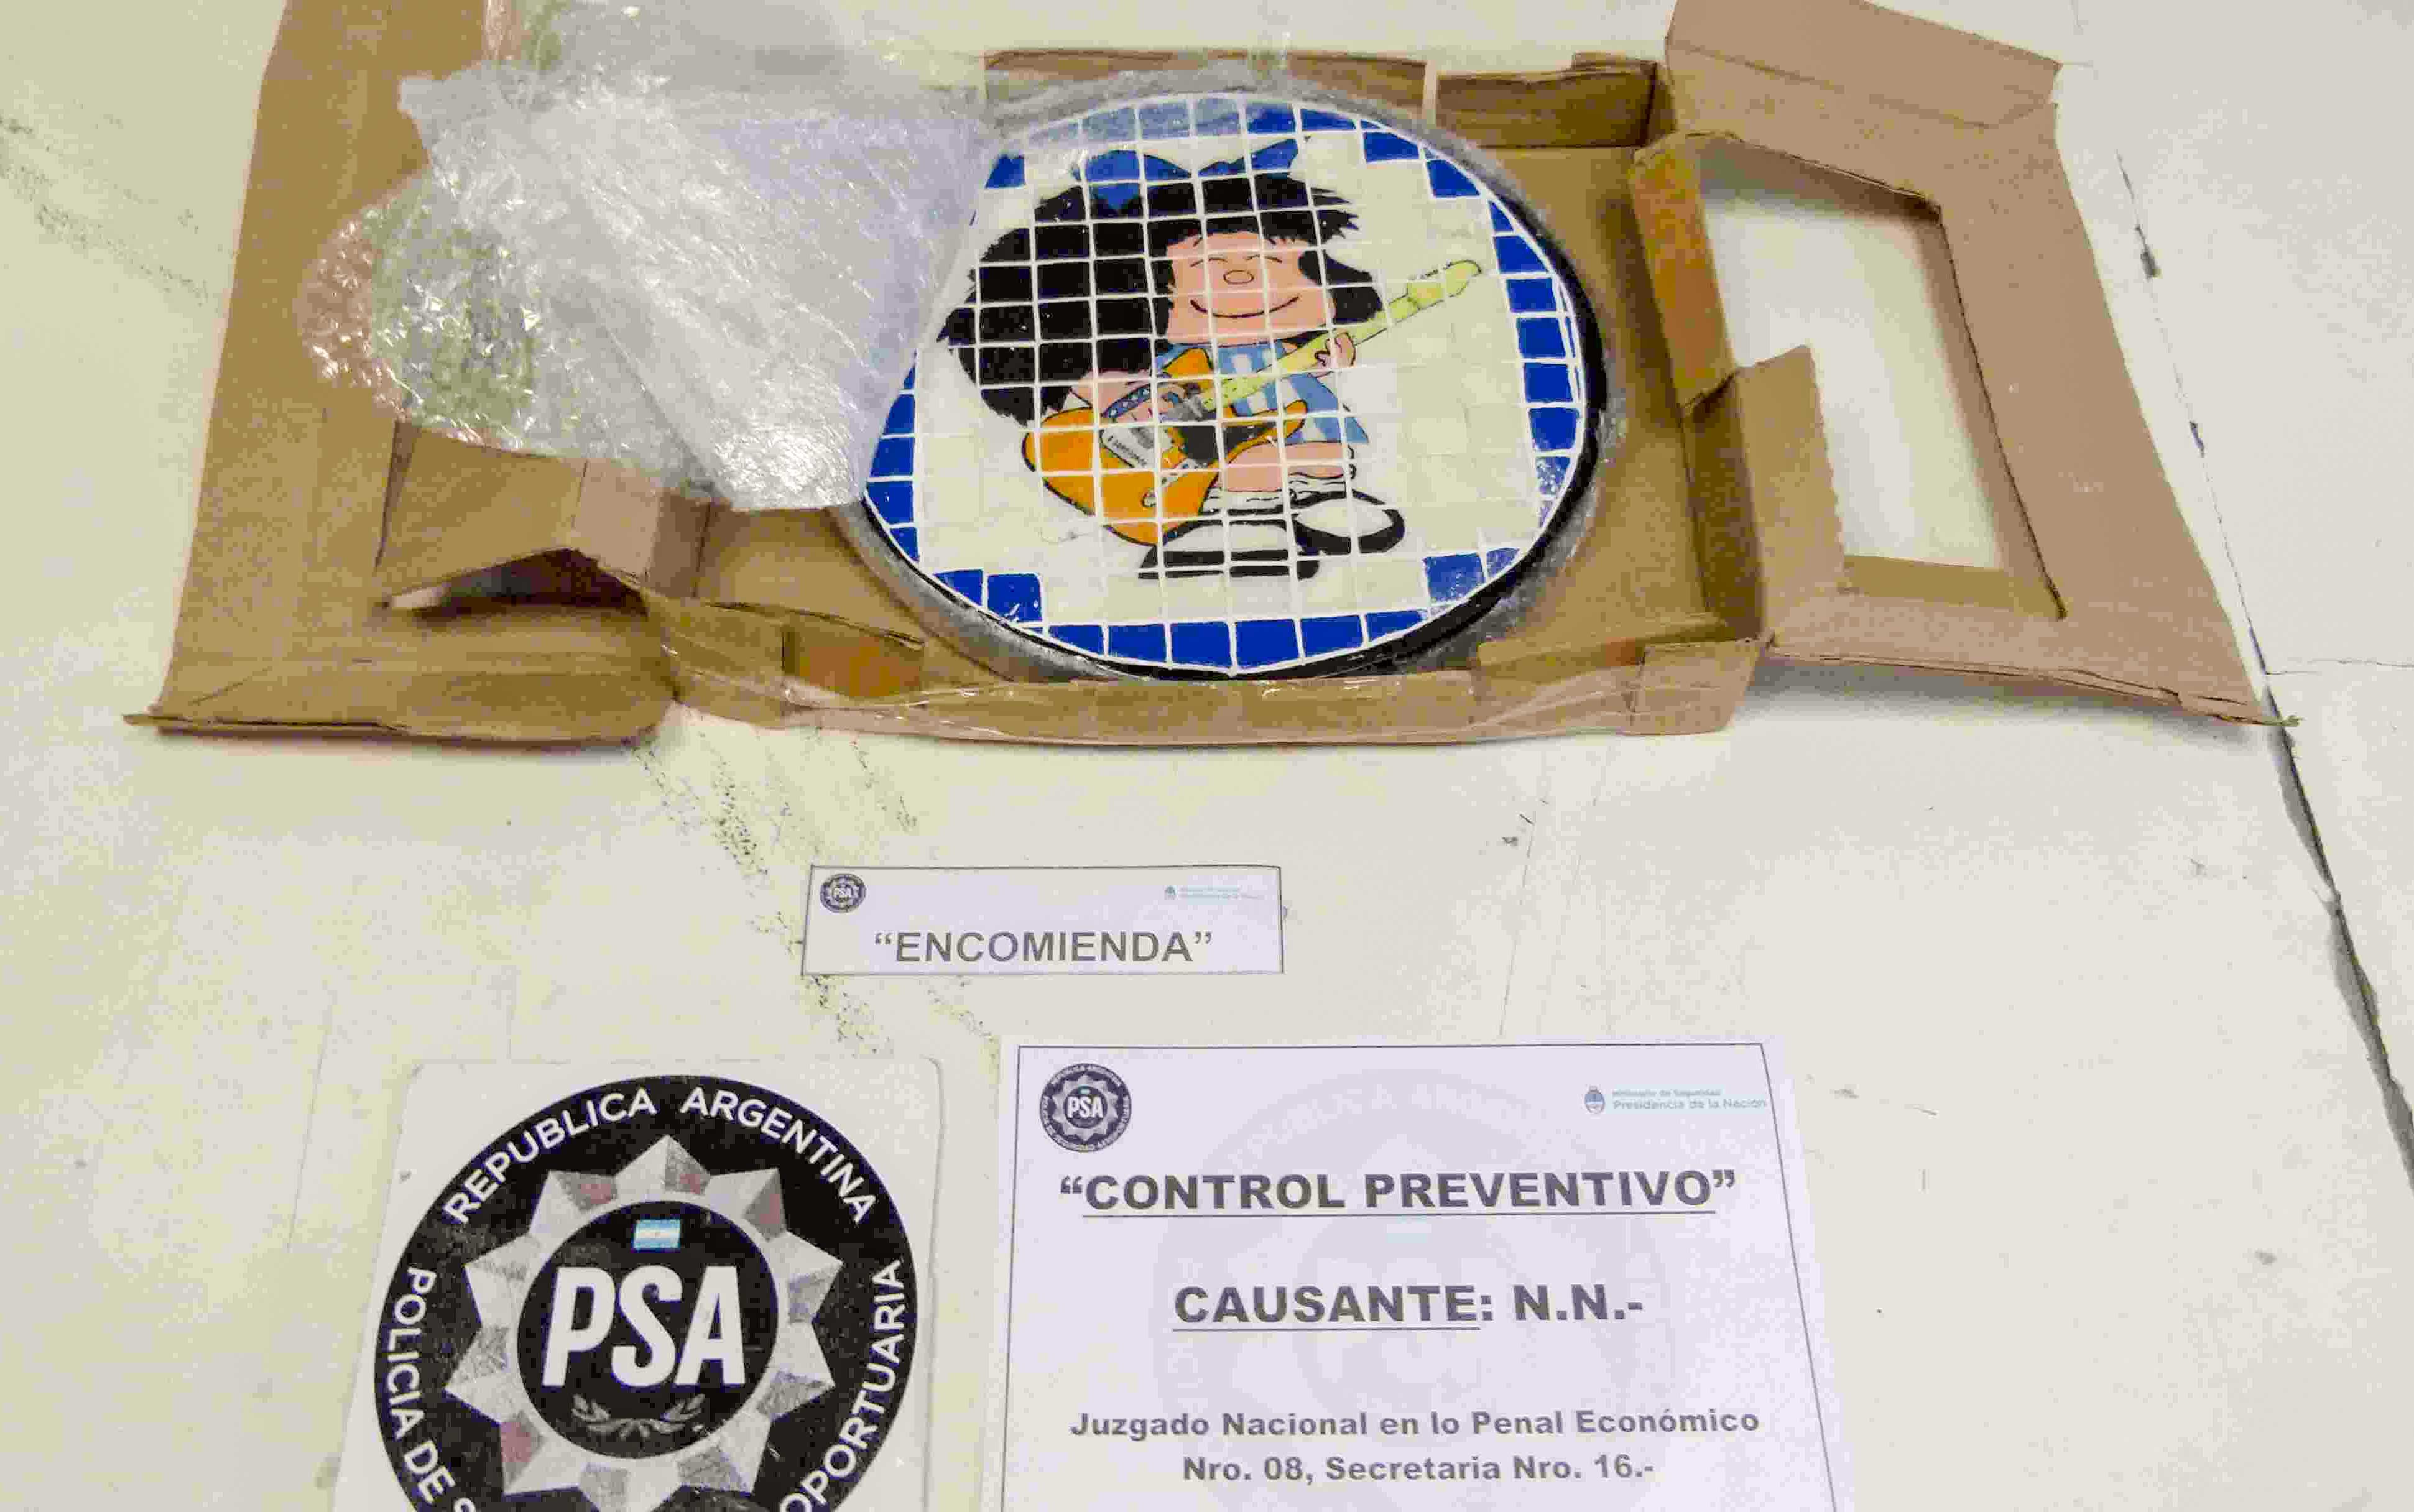 La encomienda con la imagen artesanal hecha con venecitas fue descubierta el 2 de junio.  - Imágenes: Policía de Seguridad Aeroportuaria.